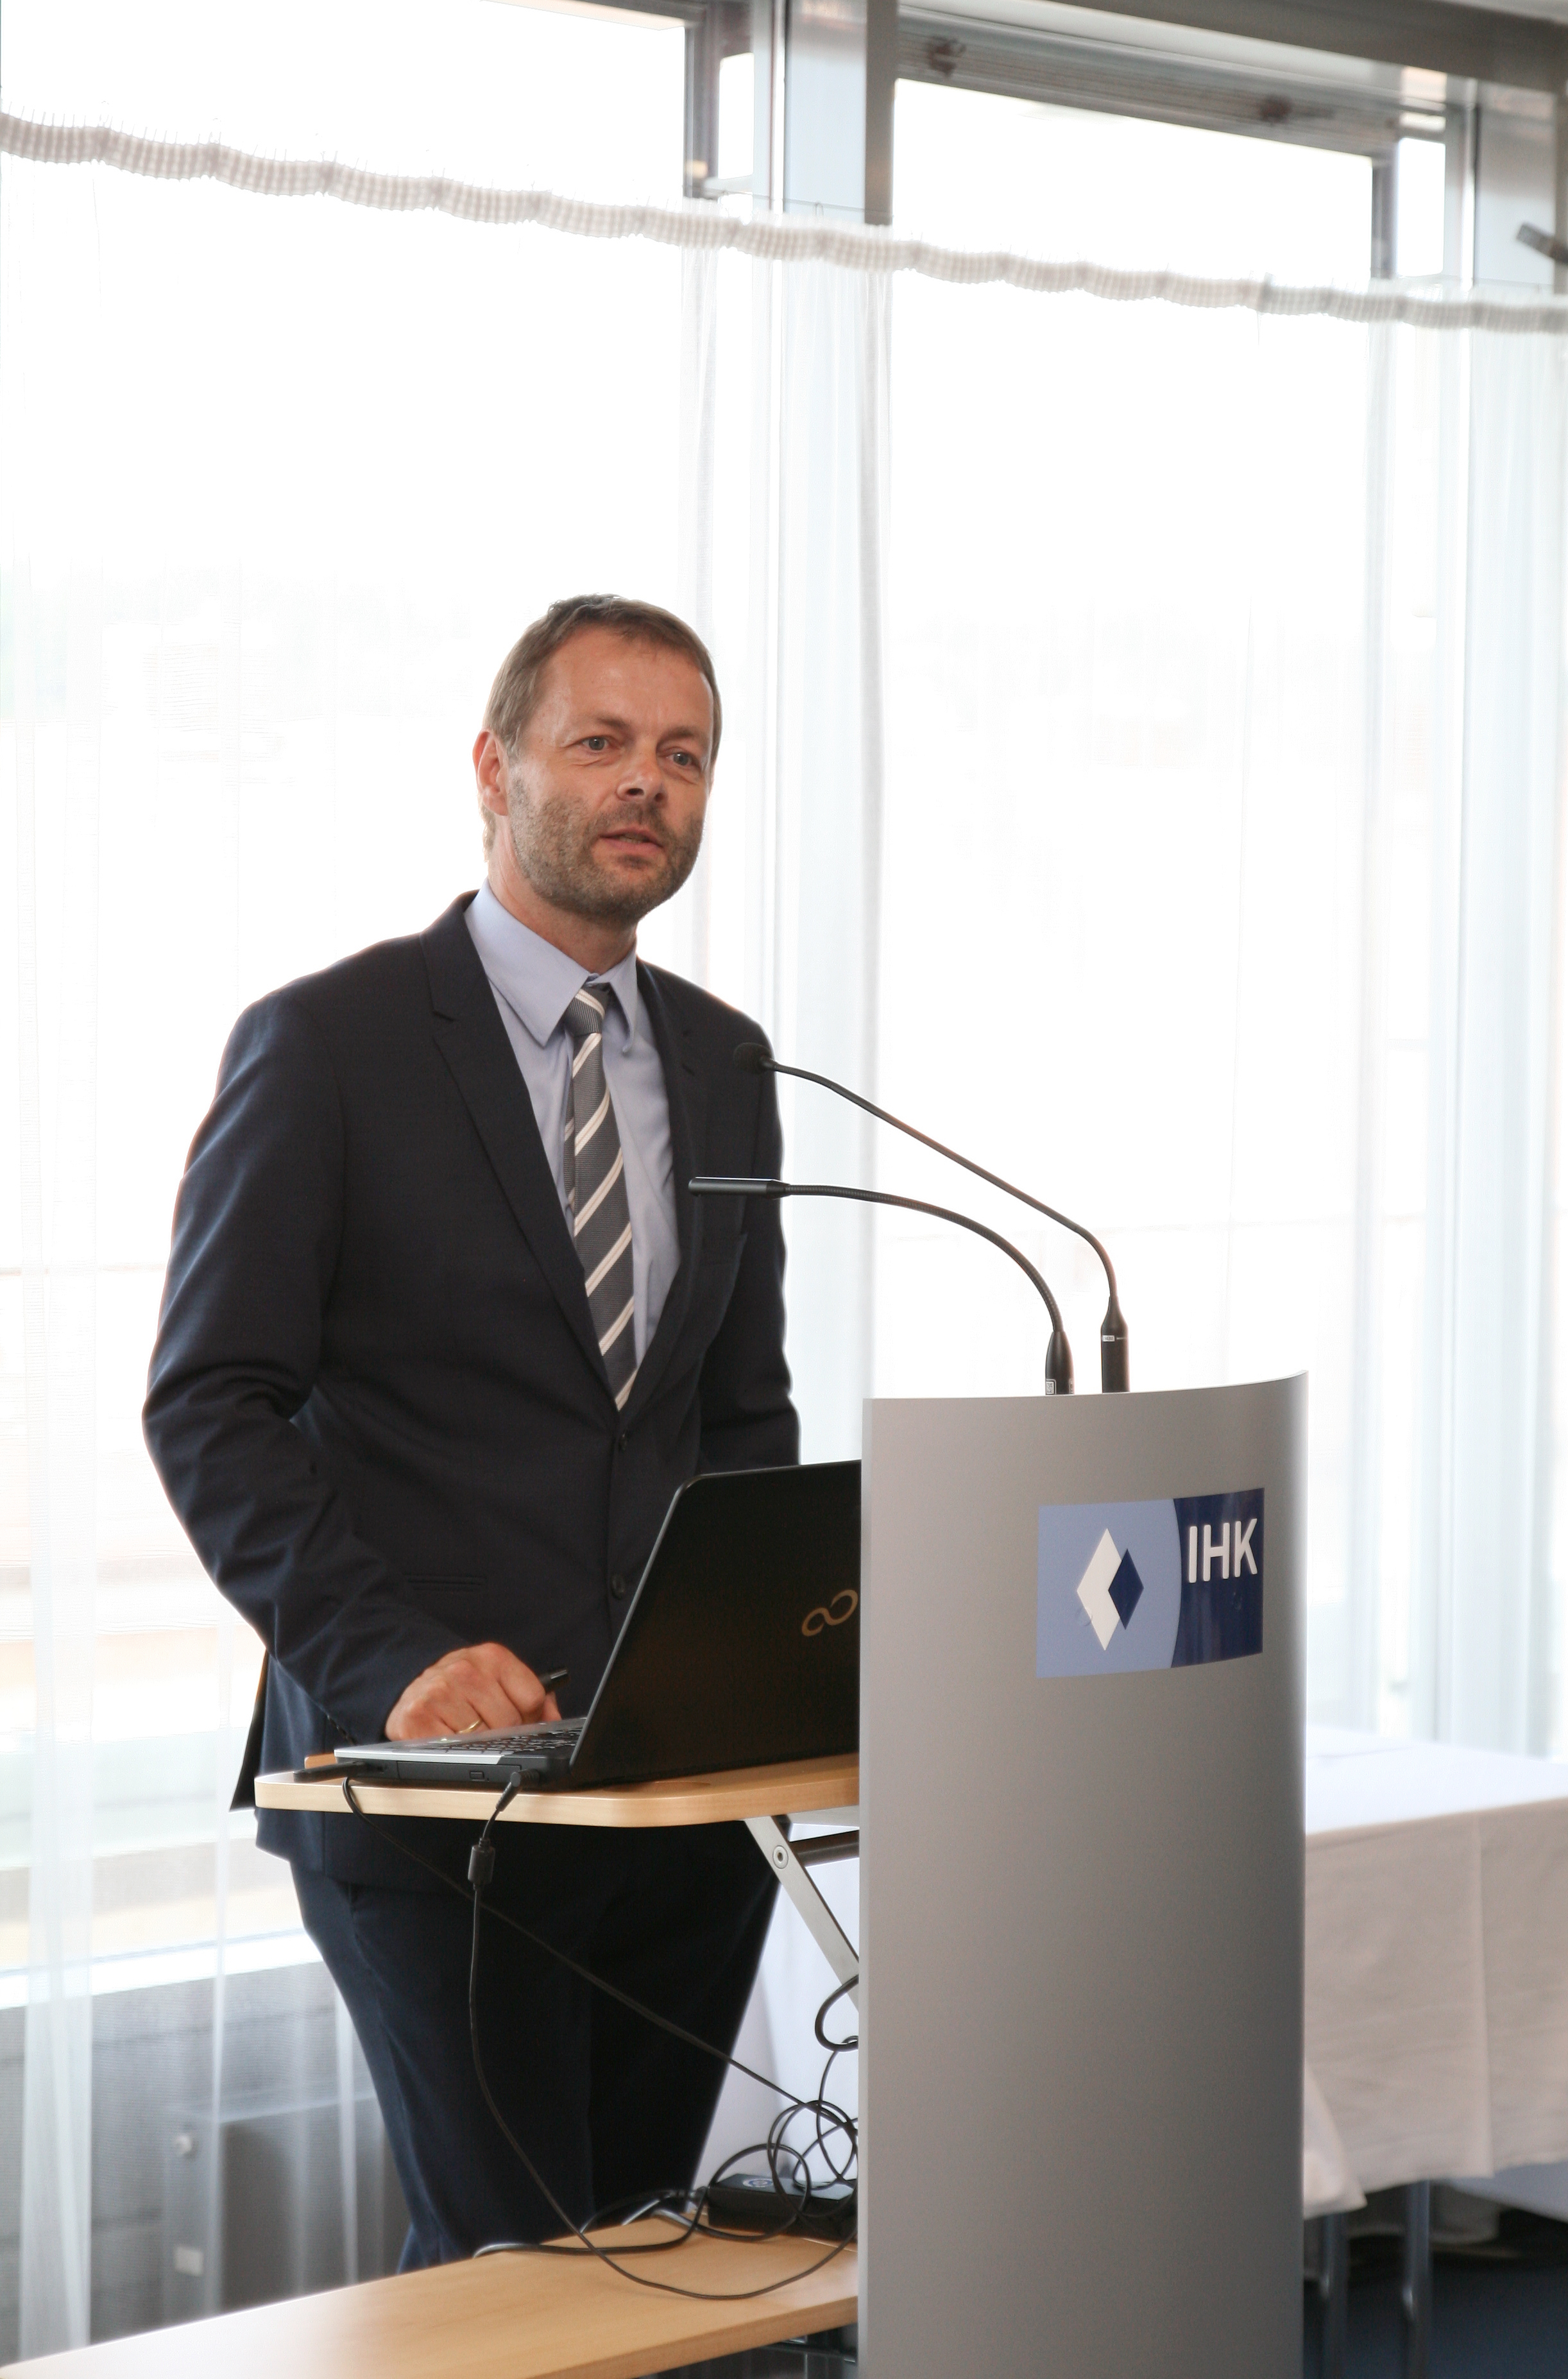  Dr. Markus Kühberger, Leiter Personalmanagement und Berufsausbildung im BMW Werk Landshut, stellte das Integrationsprogramm "WORK HERE" vor. (Foto: IHK Niederbayern)